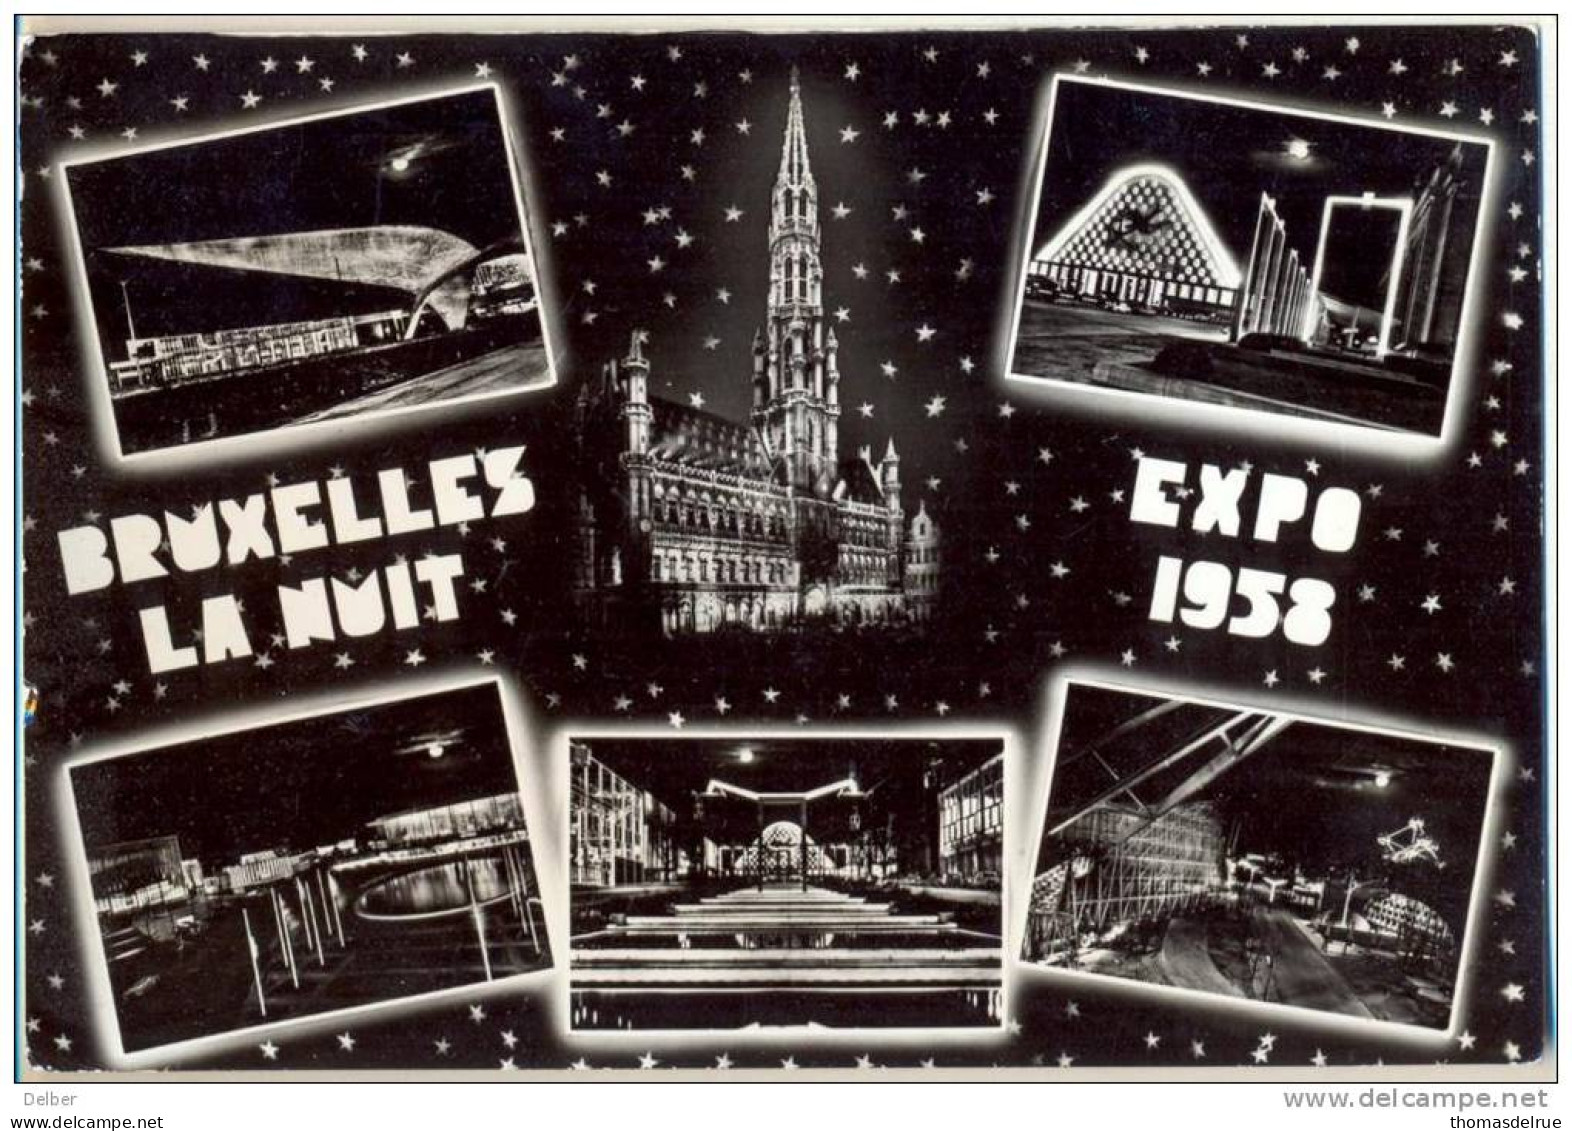 2n451: BRUXELLES LA NUIT EXPO 1958 - Bruxelles La Nuit